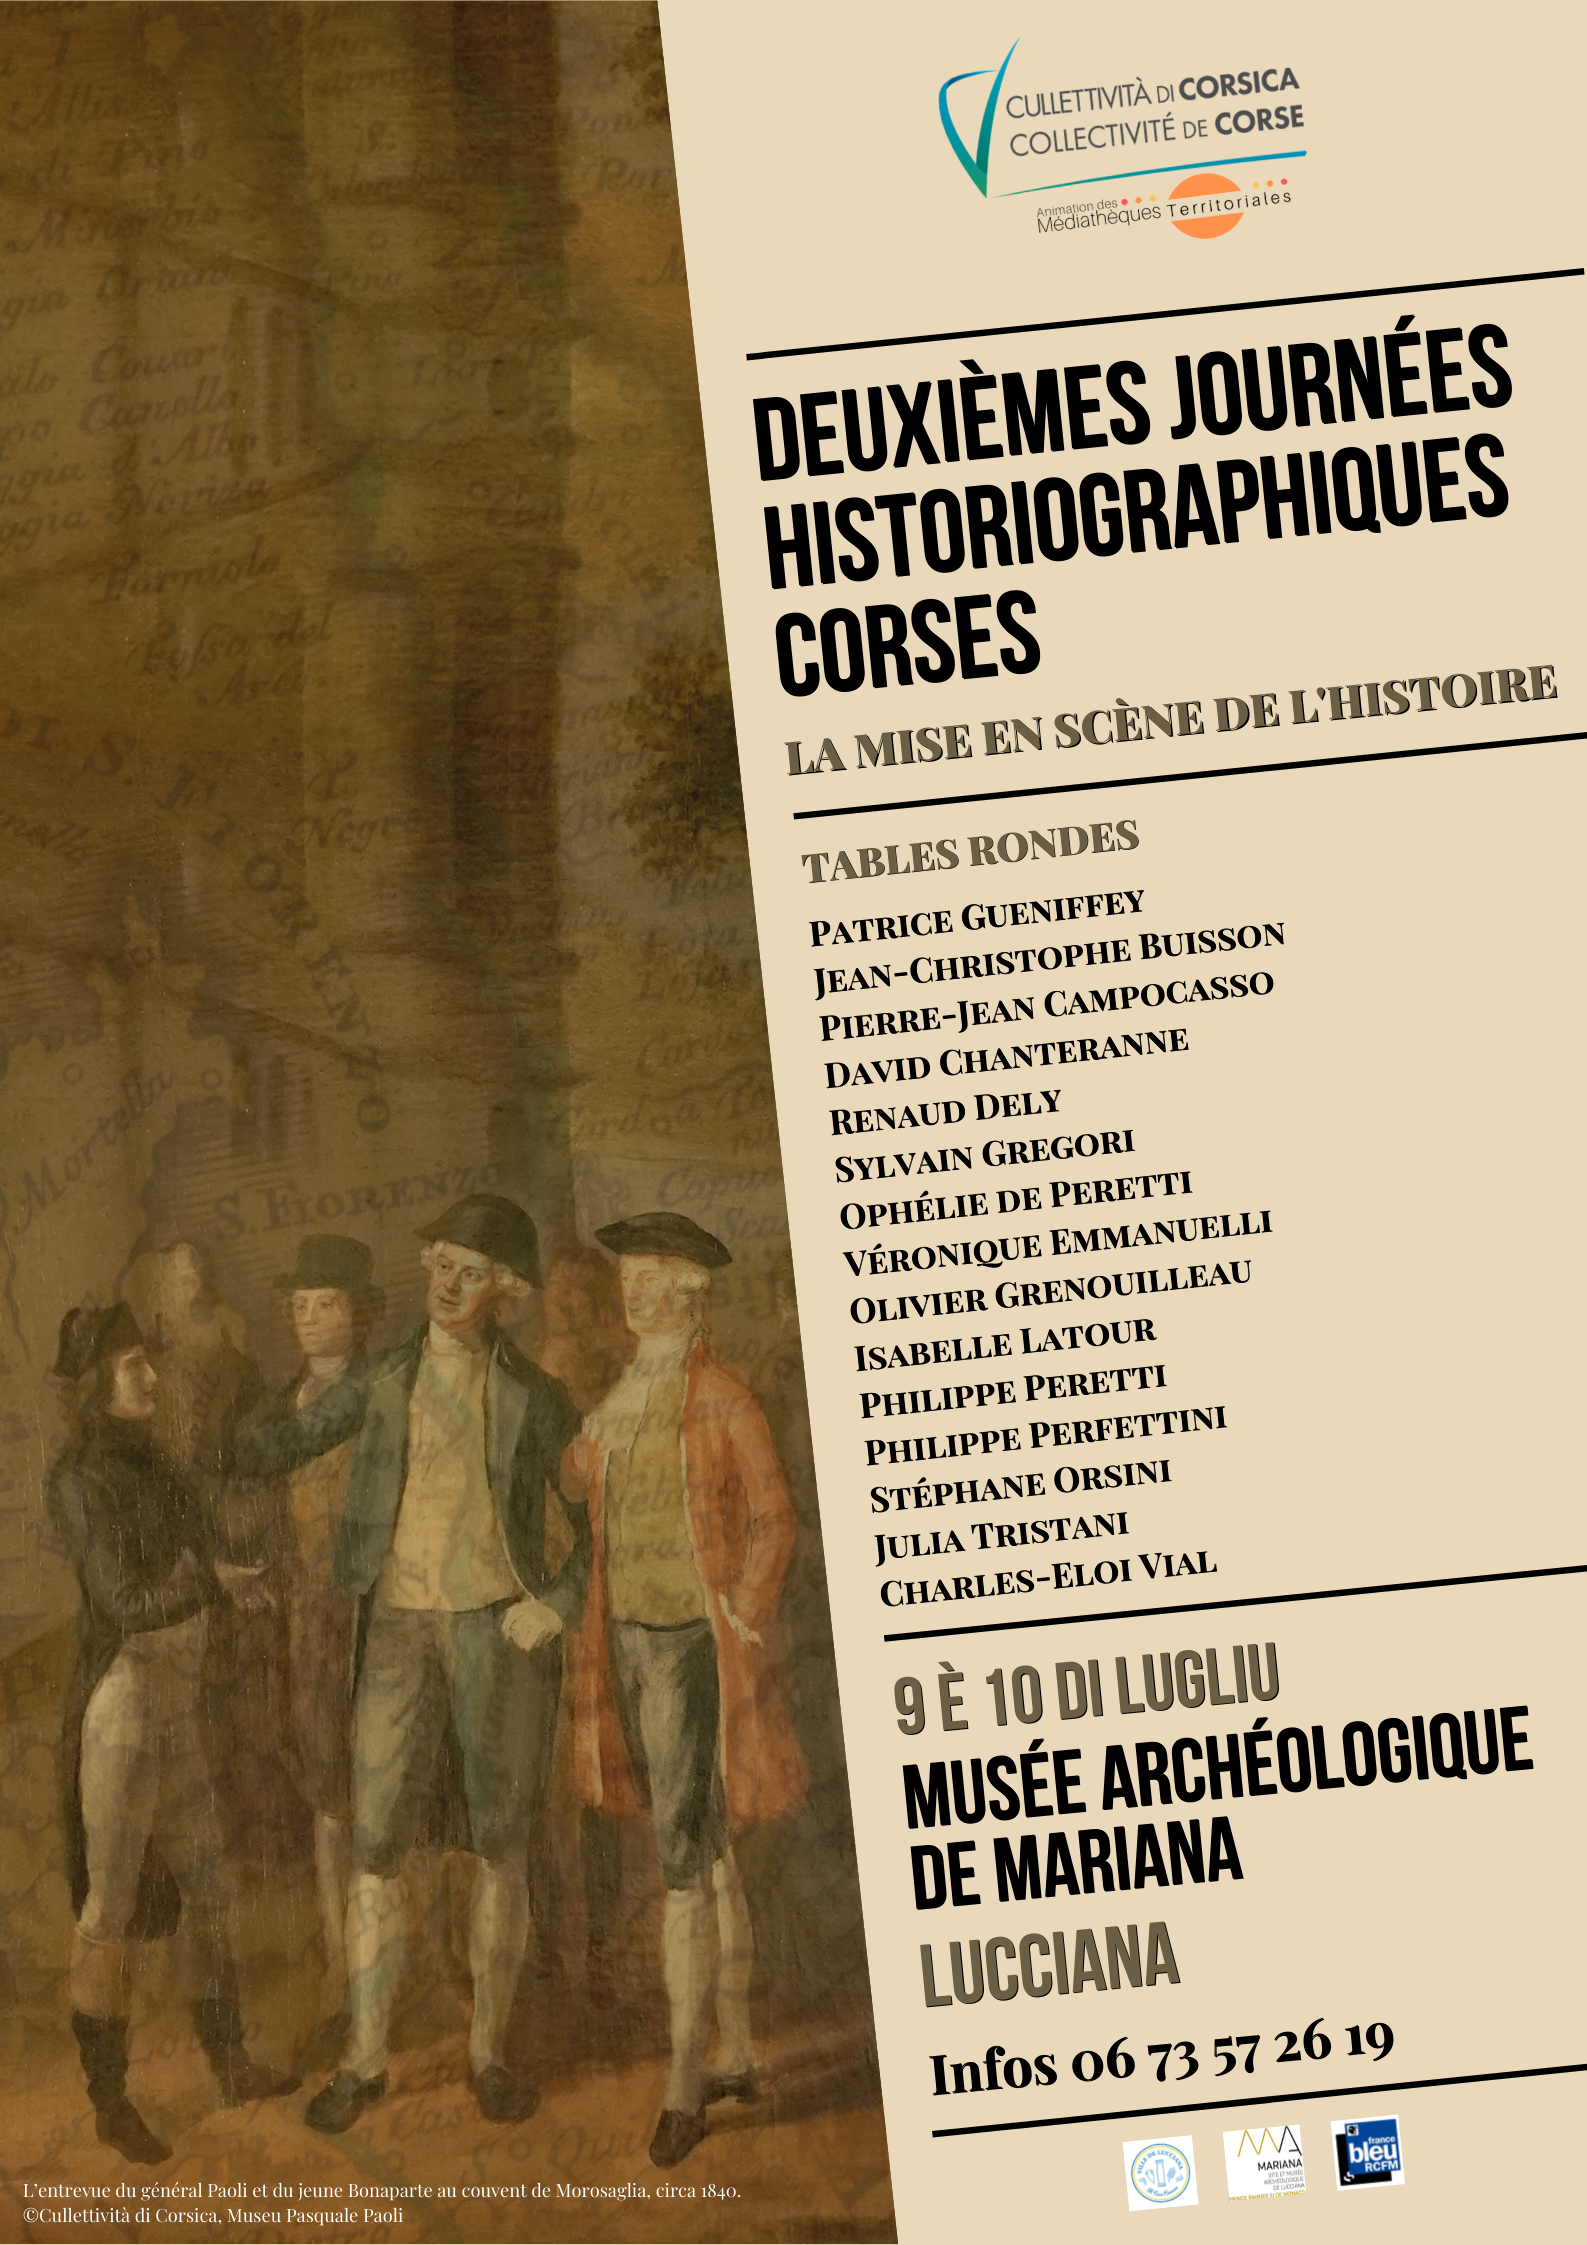 2èmes Journées historiographiques Corses "La mise en scène de l'Histoire" - Musée Archéologique de Mariana - Lucciana